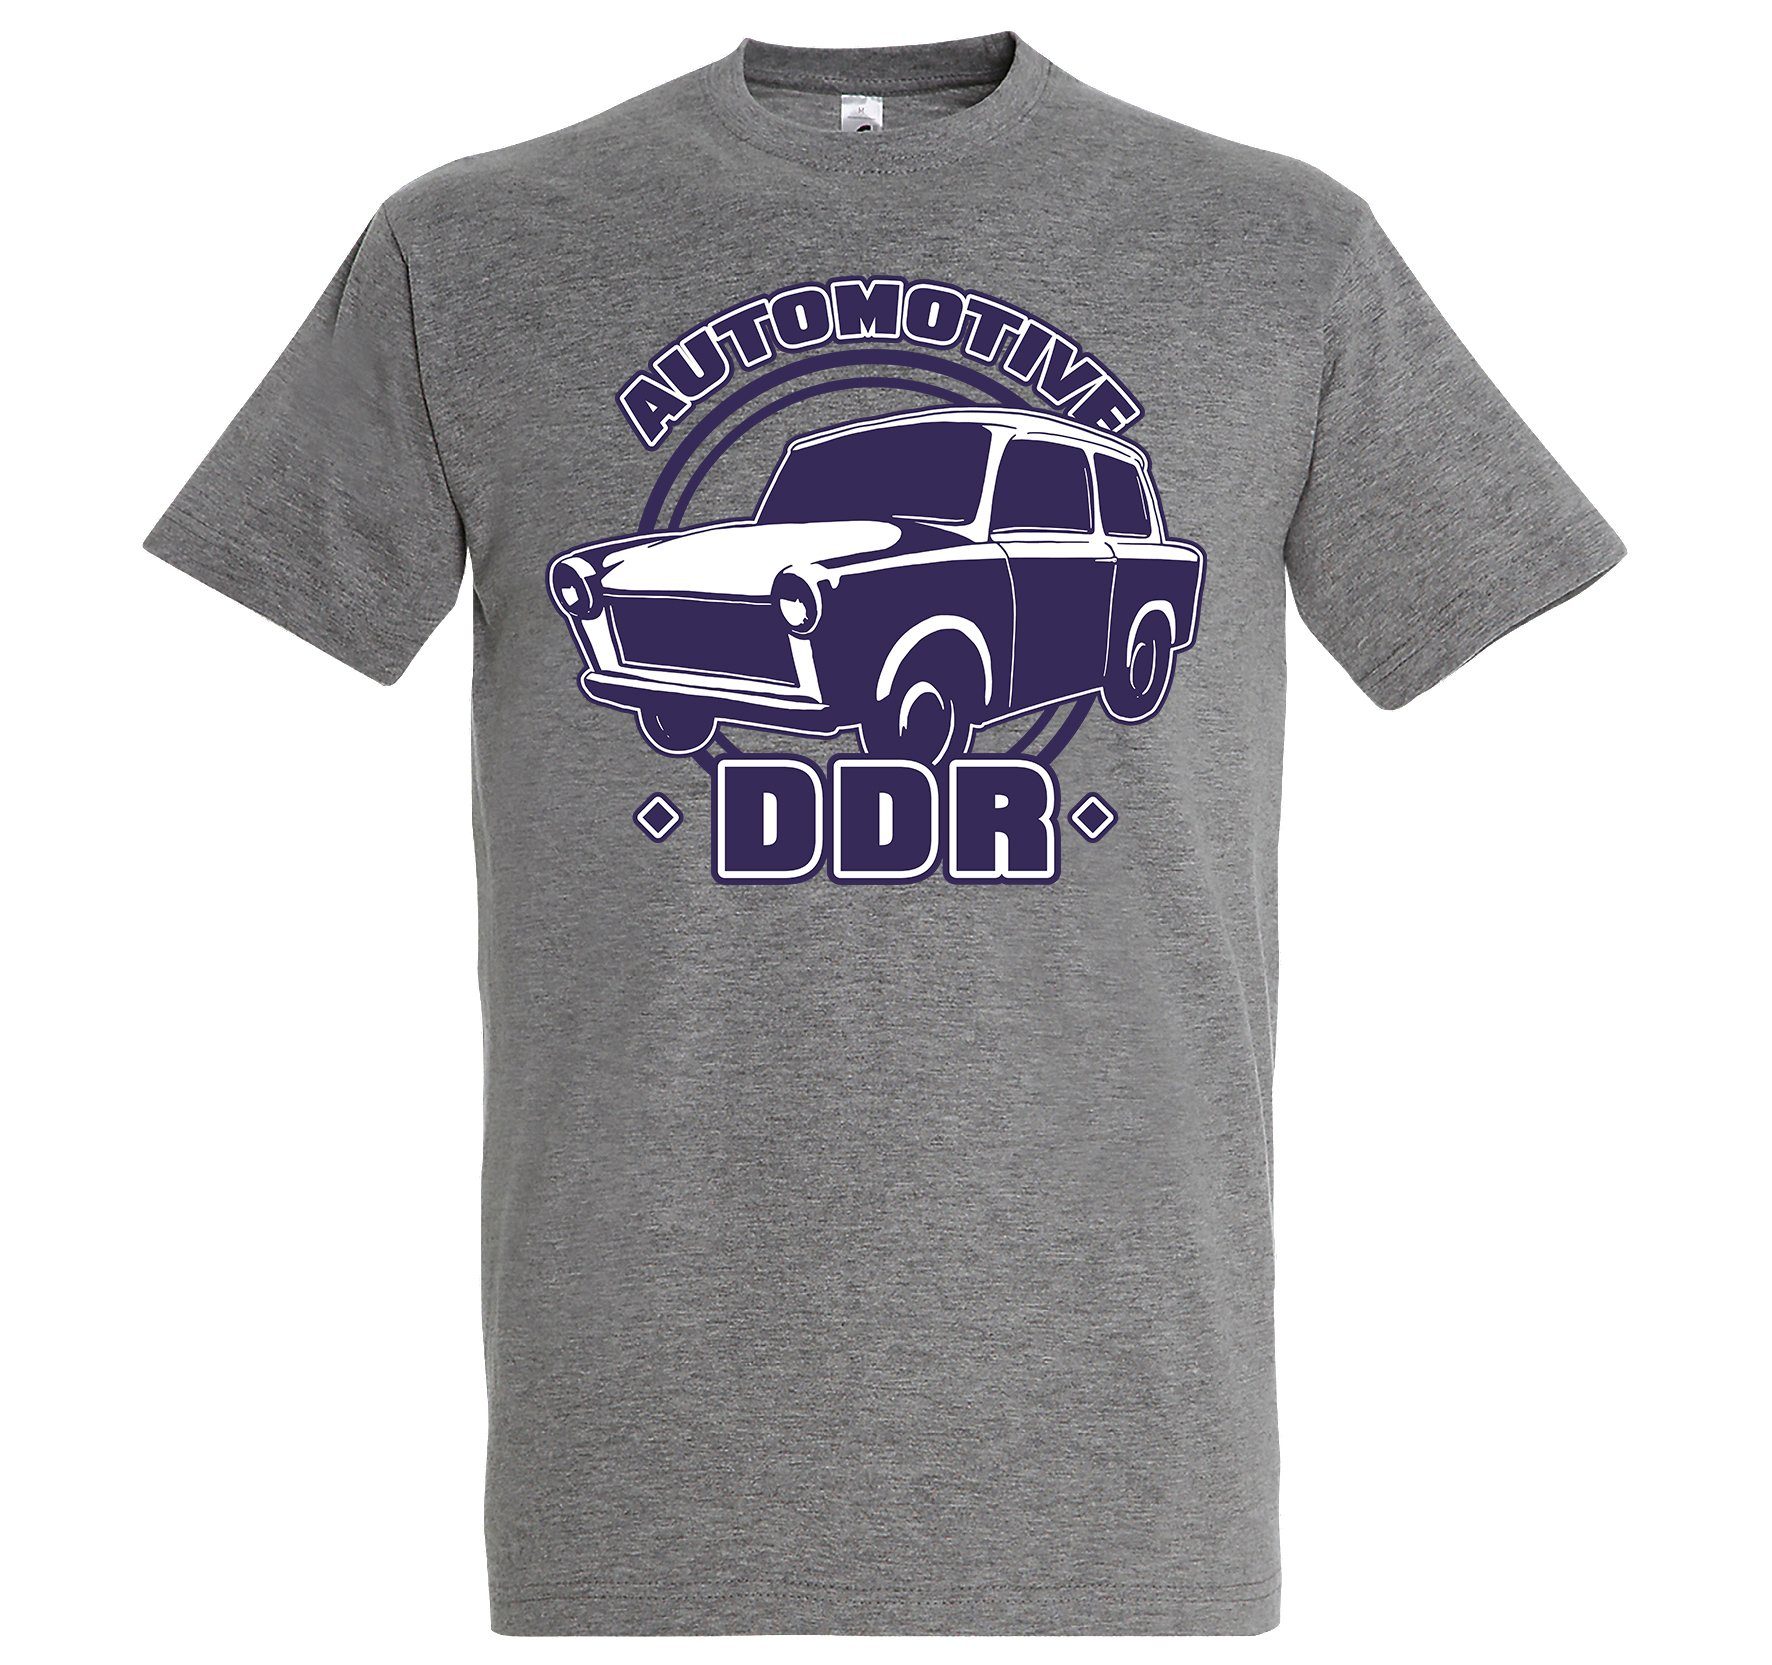 Youth Herren T-Shirt Grau AutoDDR lustigem Designz mit T-Shirt Spruch